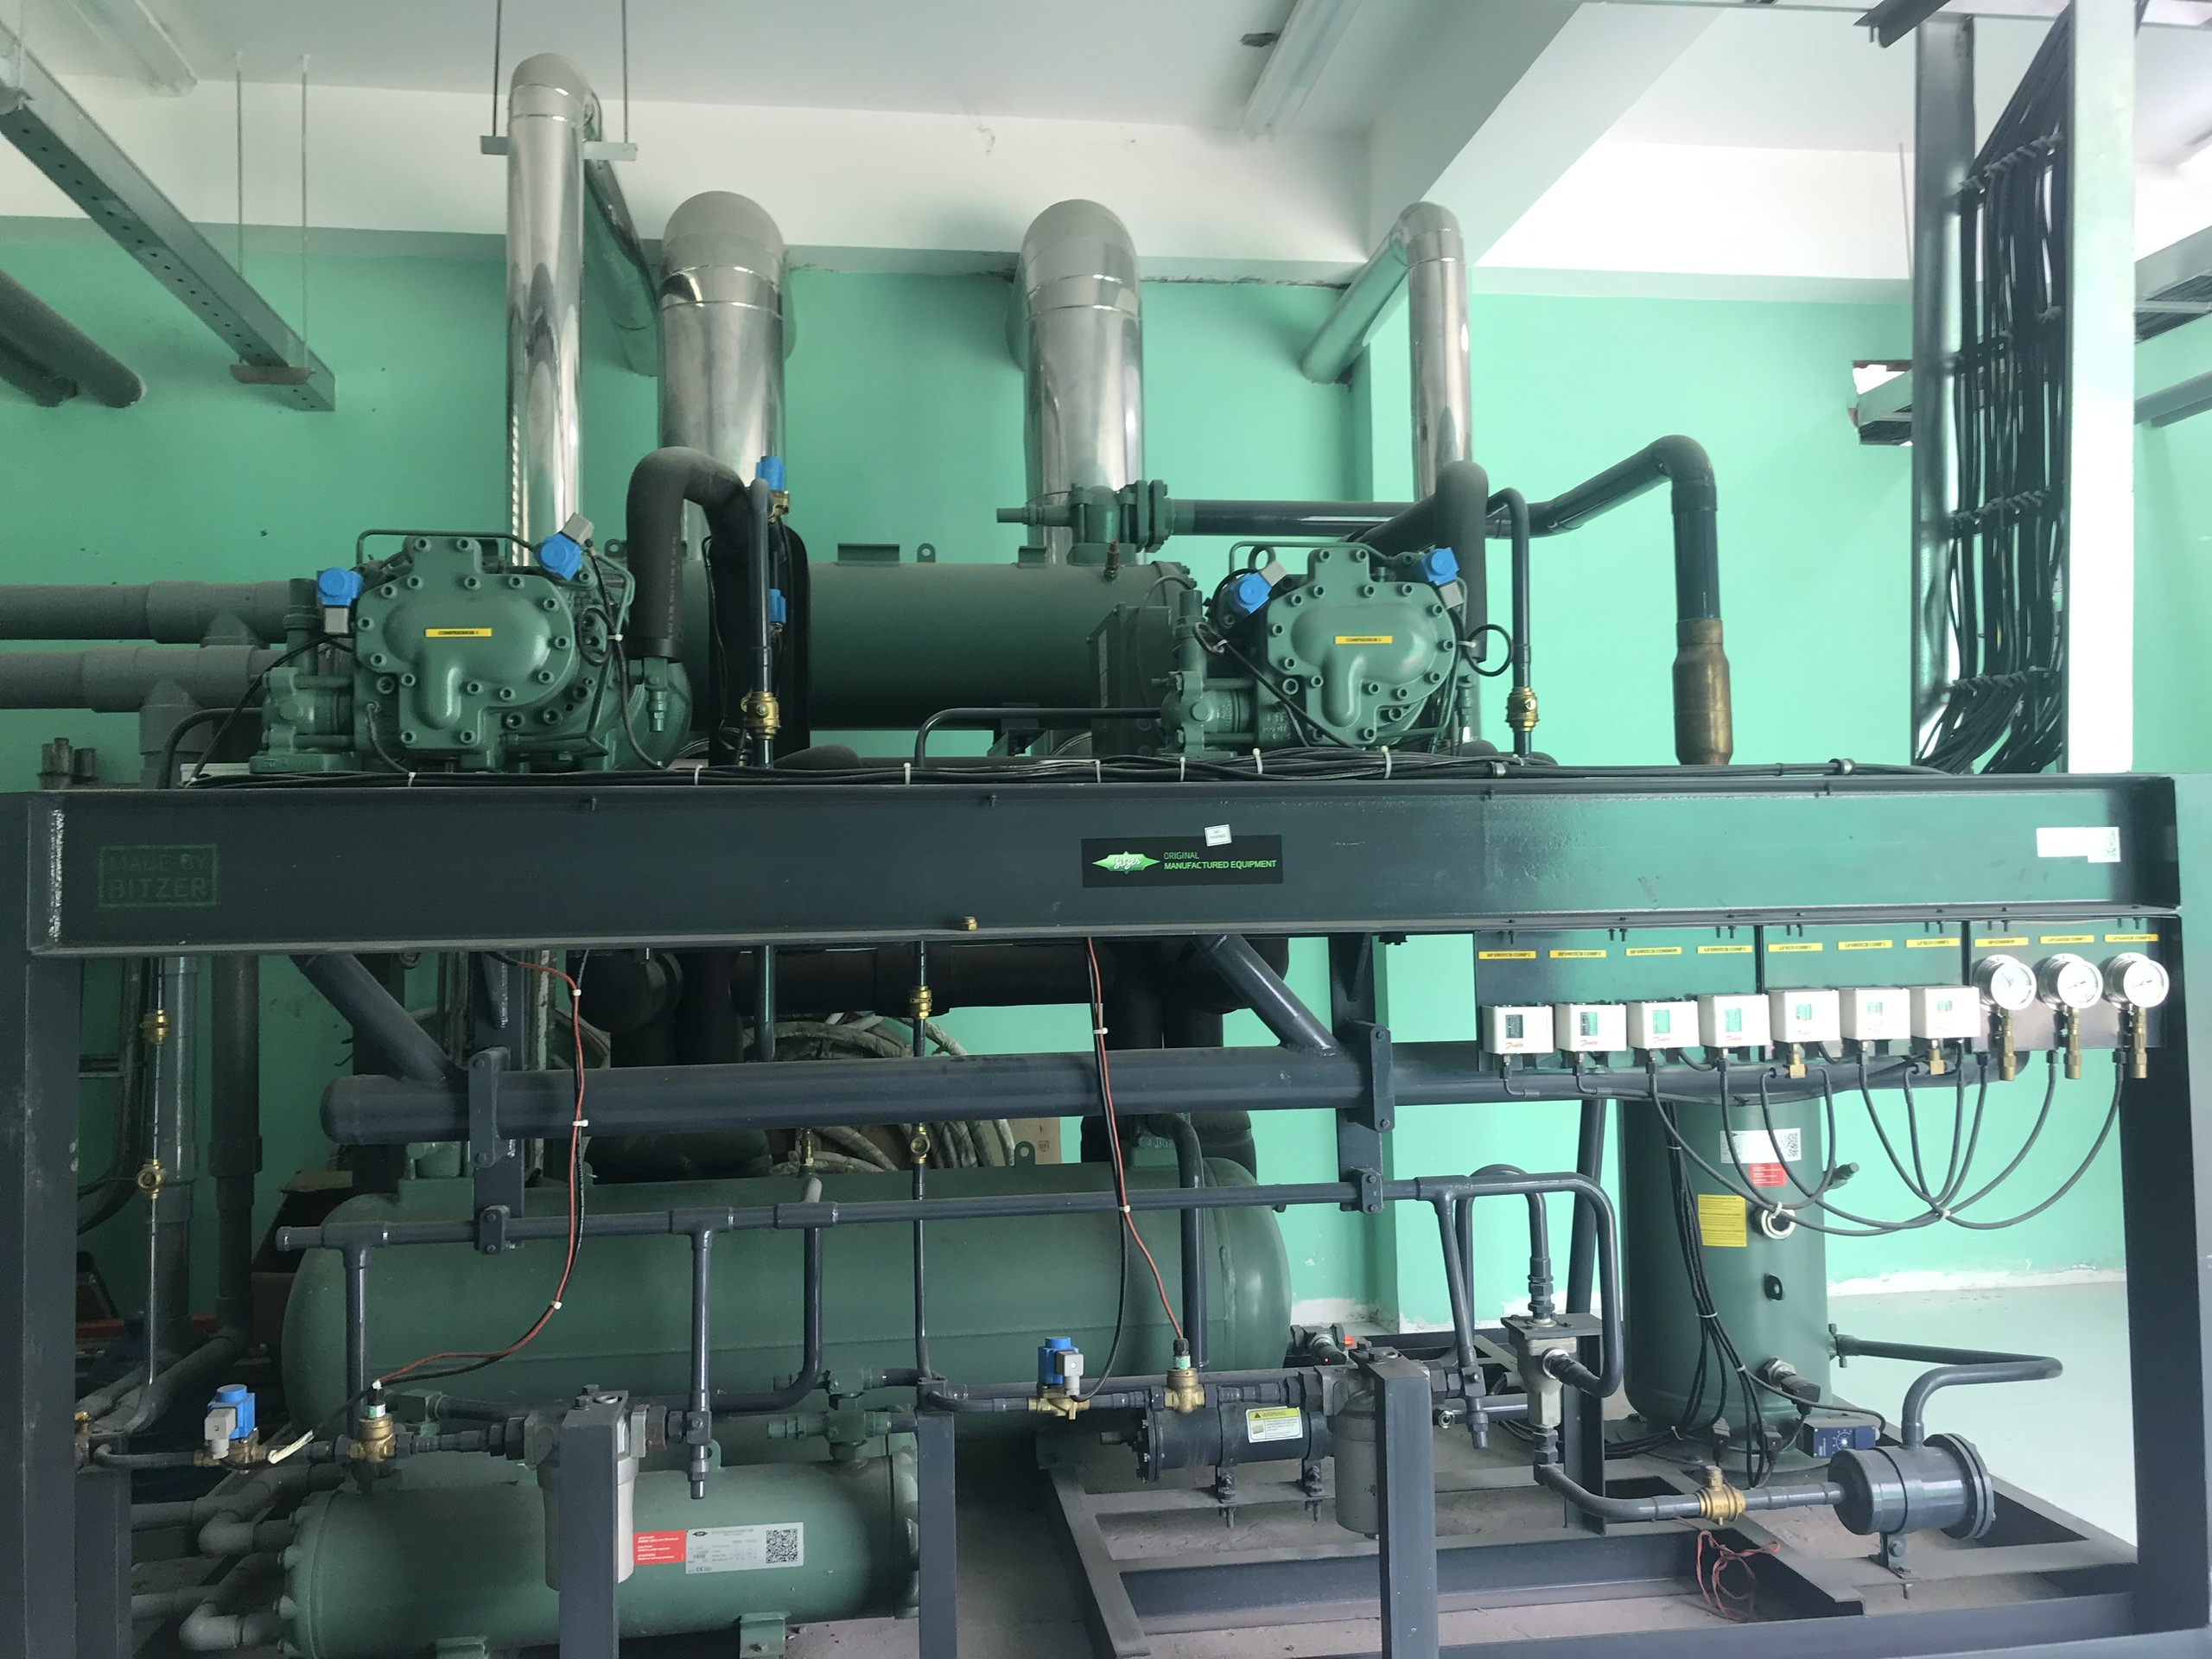 Cụm rack máy nén cho hầm đông gió gồm 2 cụm máy nén bitzer được thiết kế và lên cụm tại bitzer Indonesia